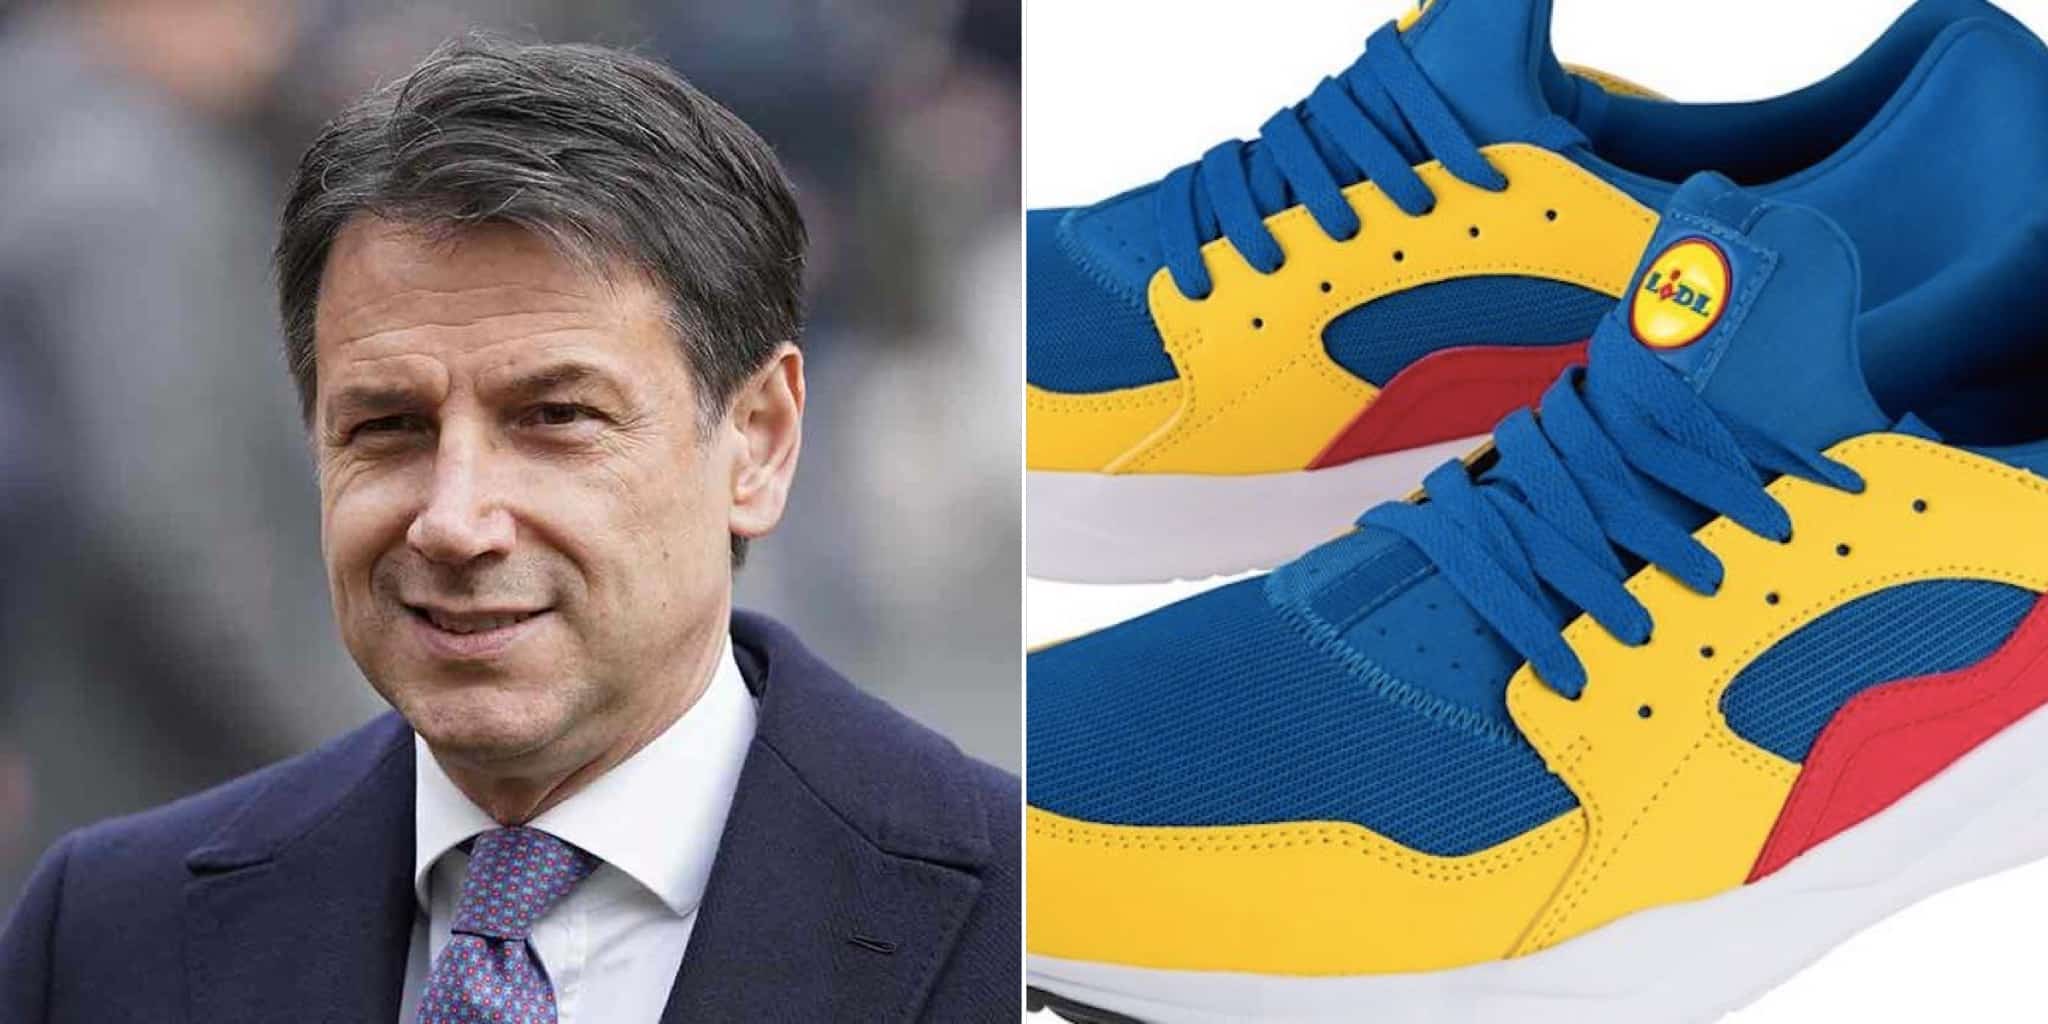 Conte vede scarpe della Lidl: “600 euro immediati per chi le compra” - La  Refubblica